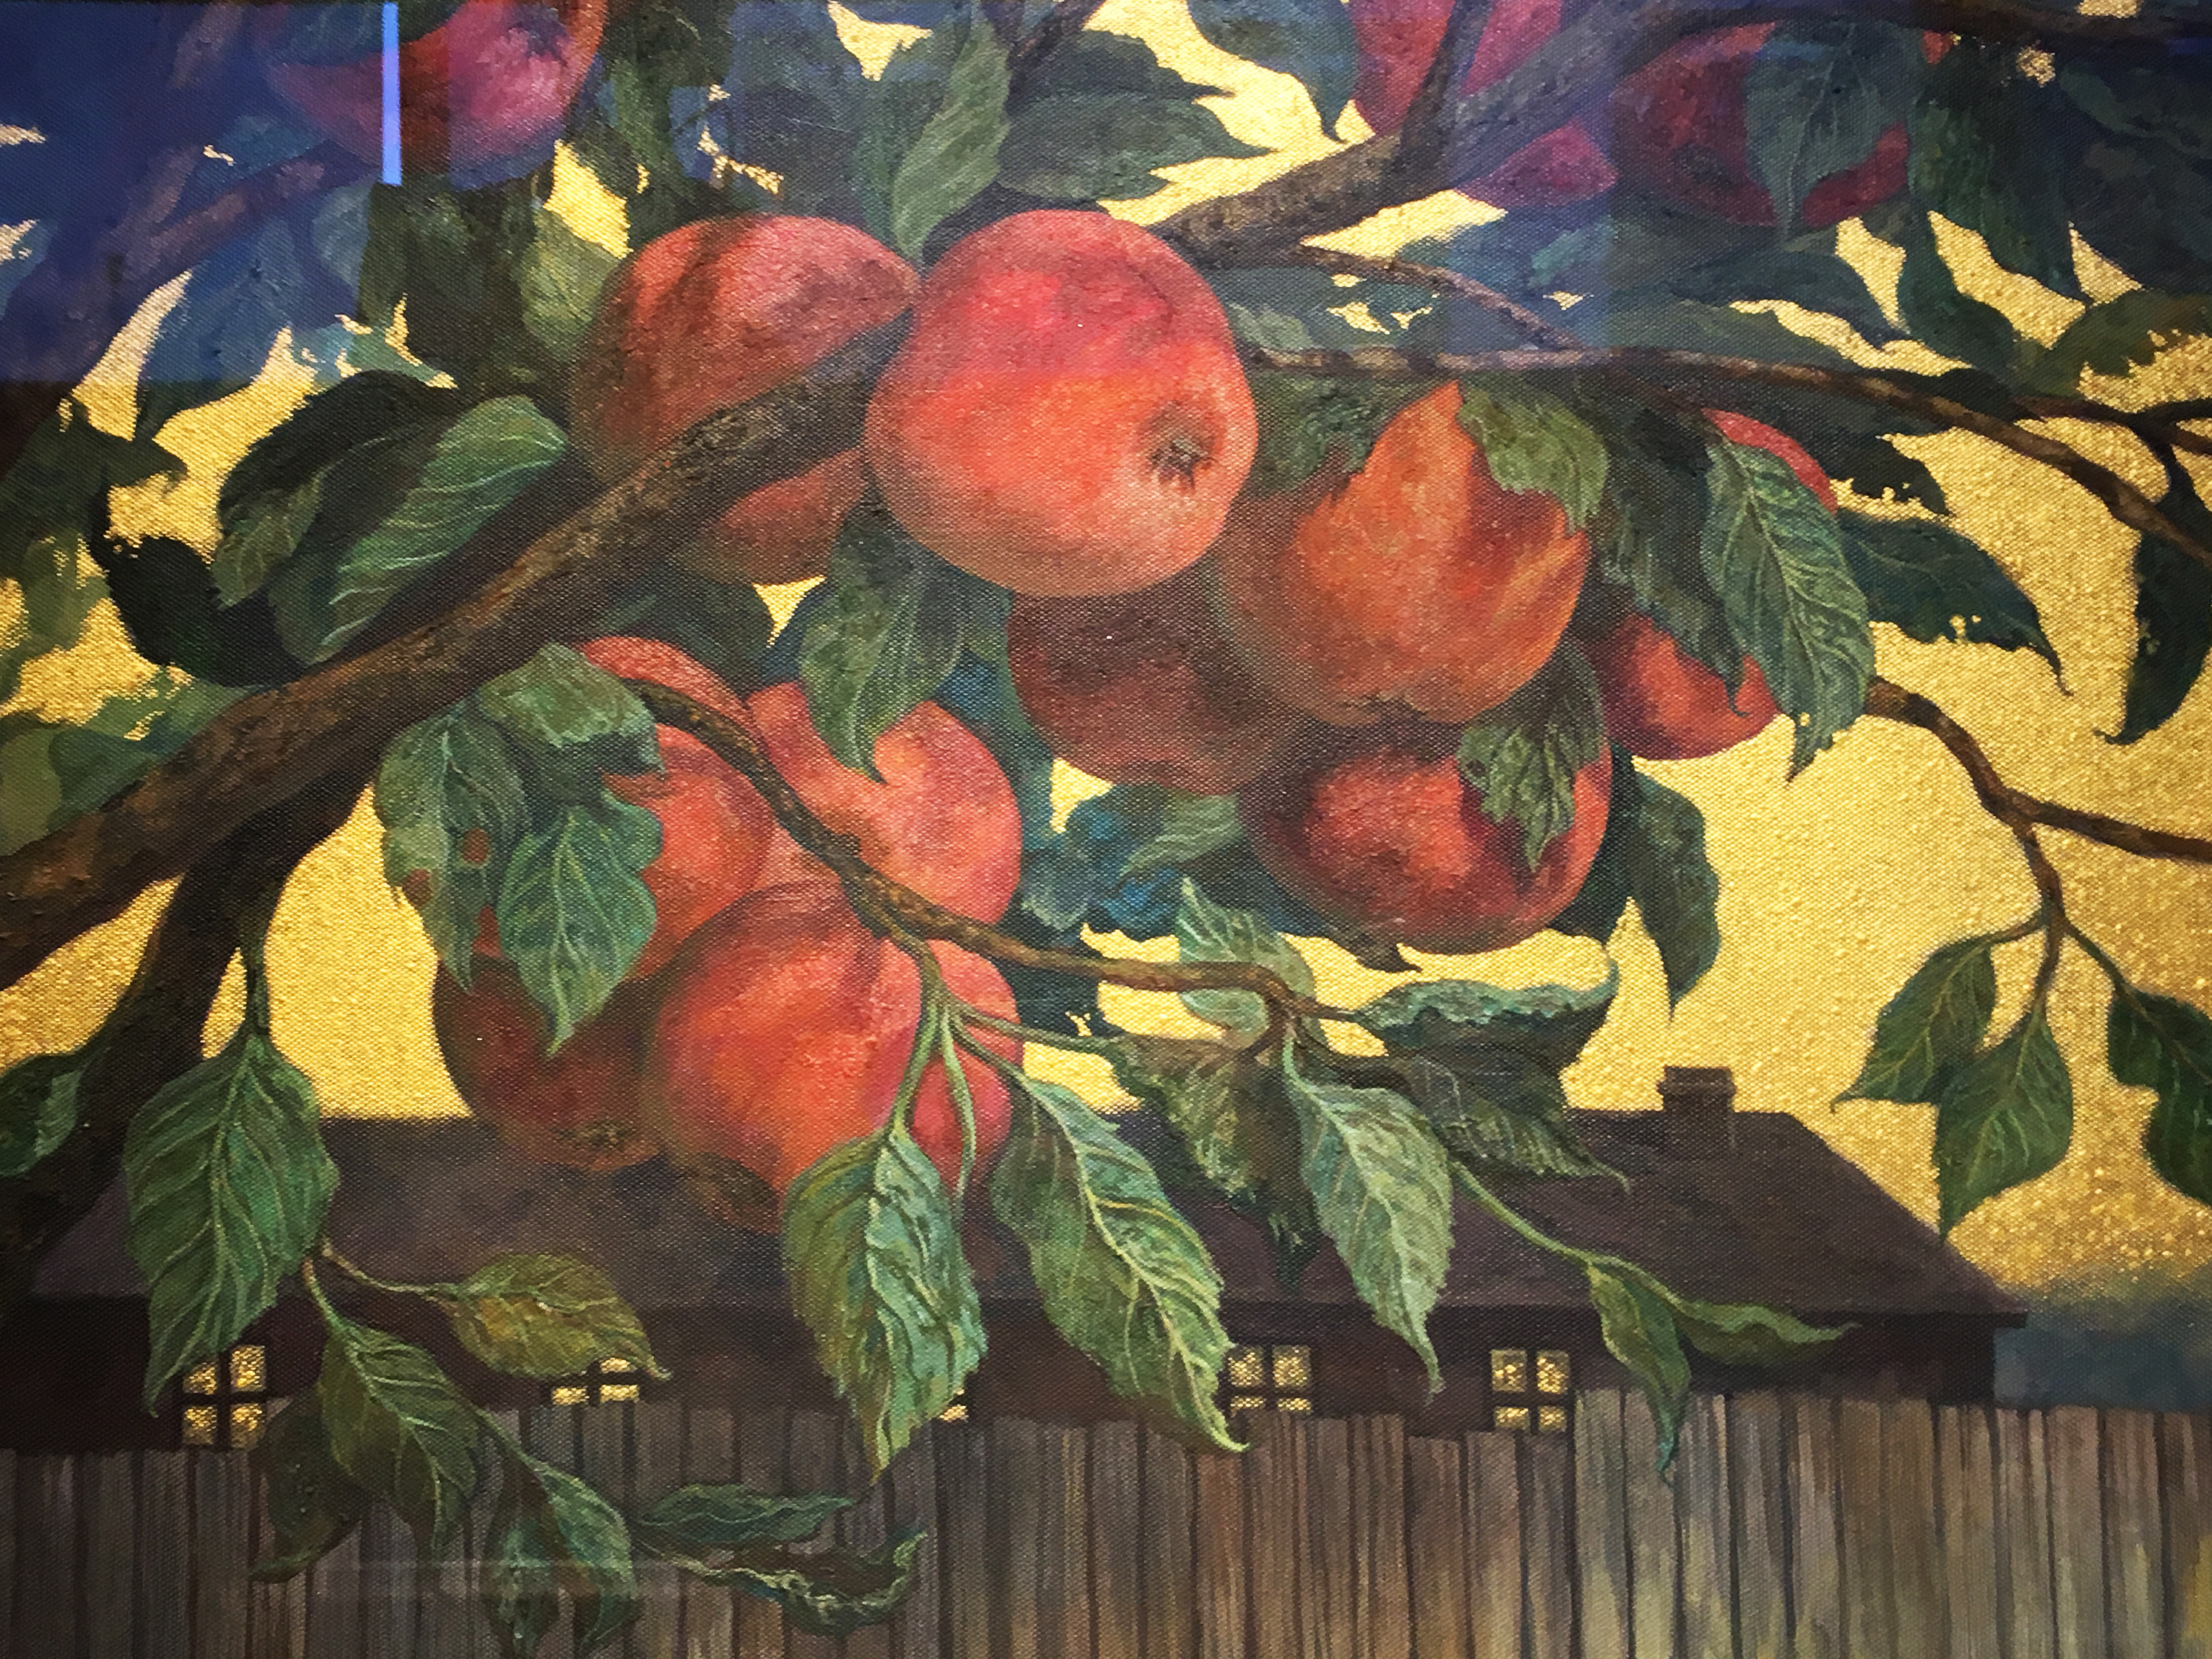 劉子平，《蘋果樹》細節，45.5 x 53 cm，油彩、壓克力、綜合媒材、畫布，2019。